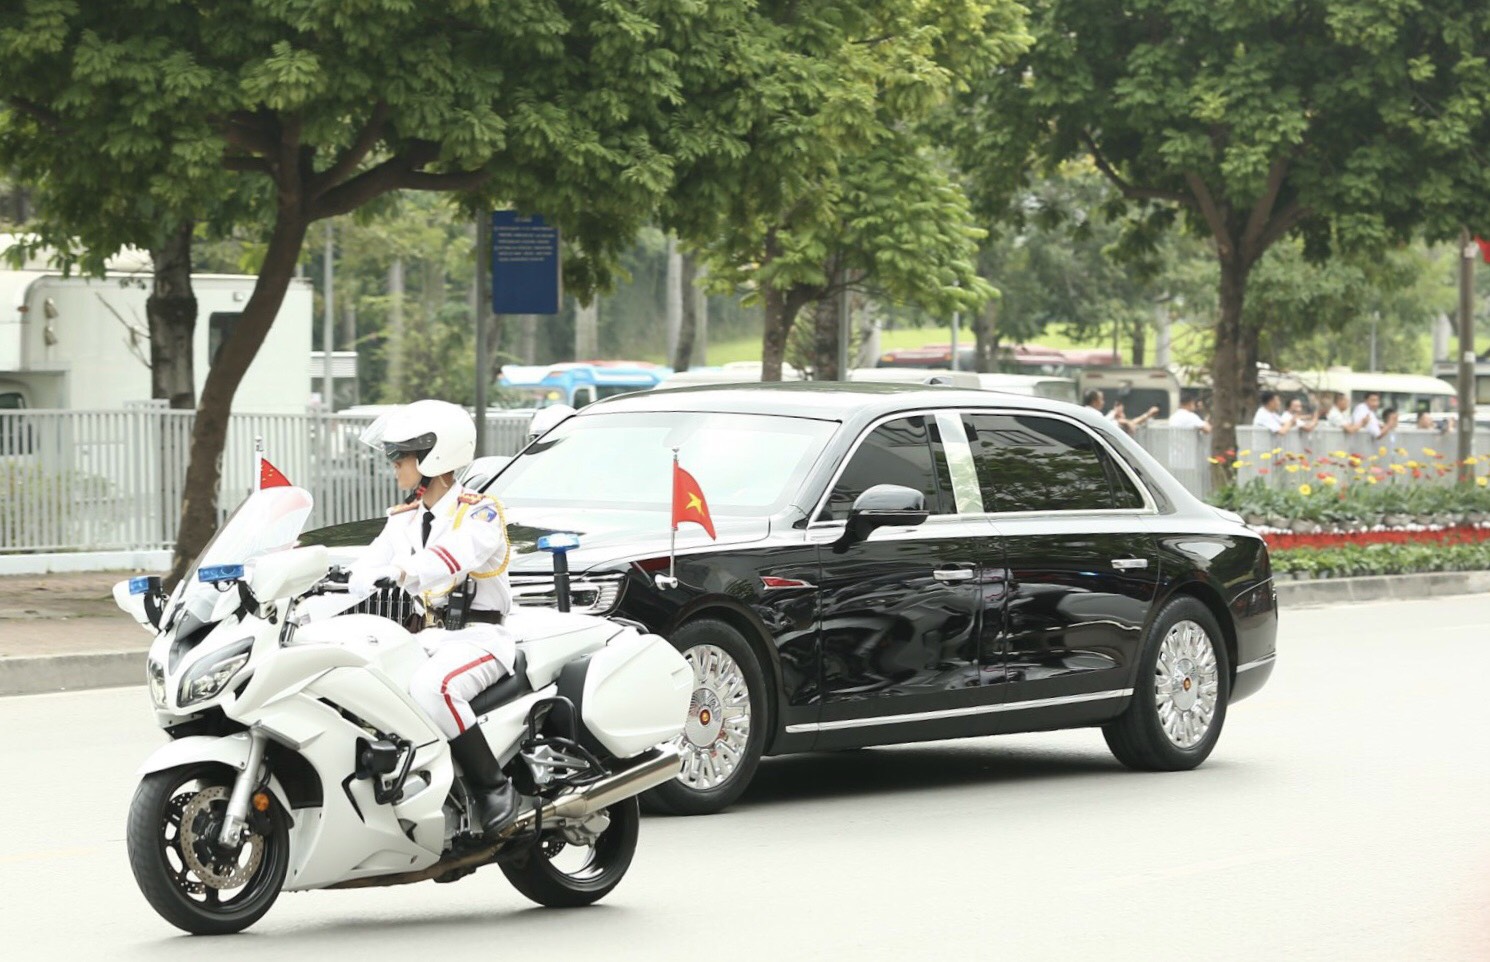 Cập nhật: Lễ đón chính thức Tổng Bí thư, Chủ tịch Trung Quốc Tập Cận Bình - Ảnh 2.